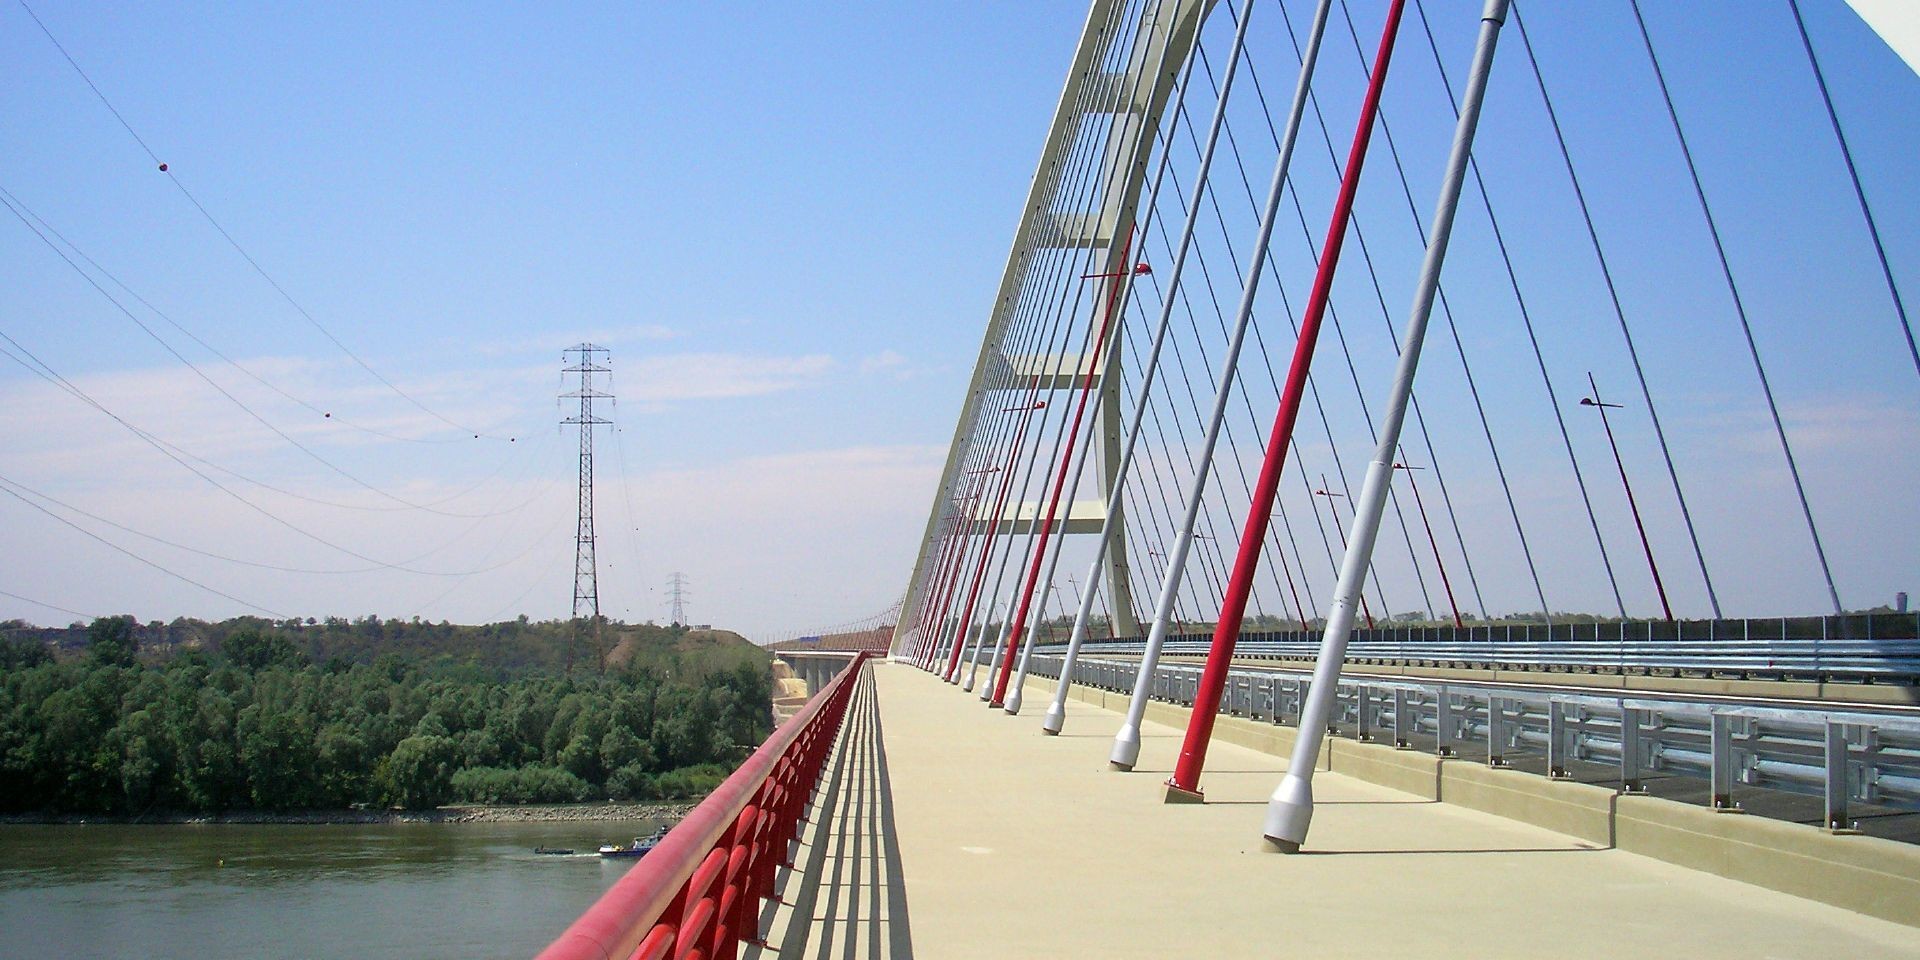 Concrete structures in bridges